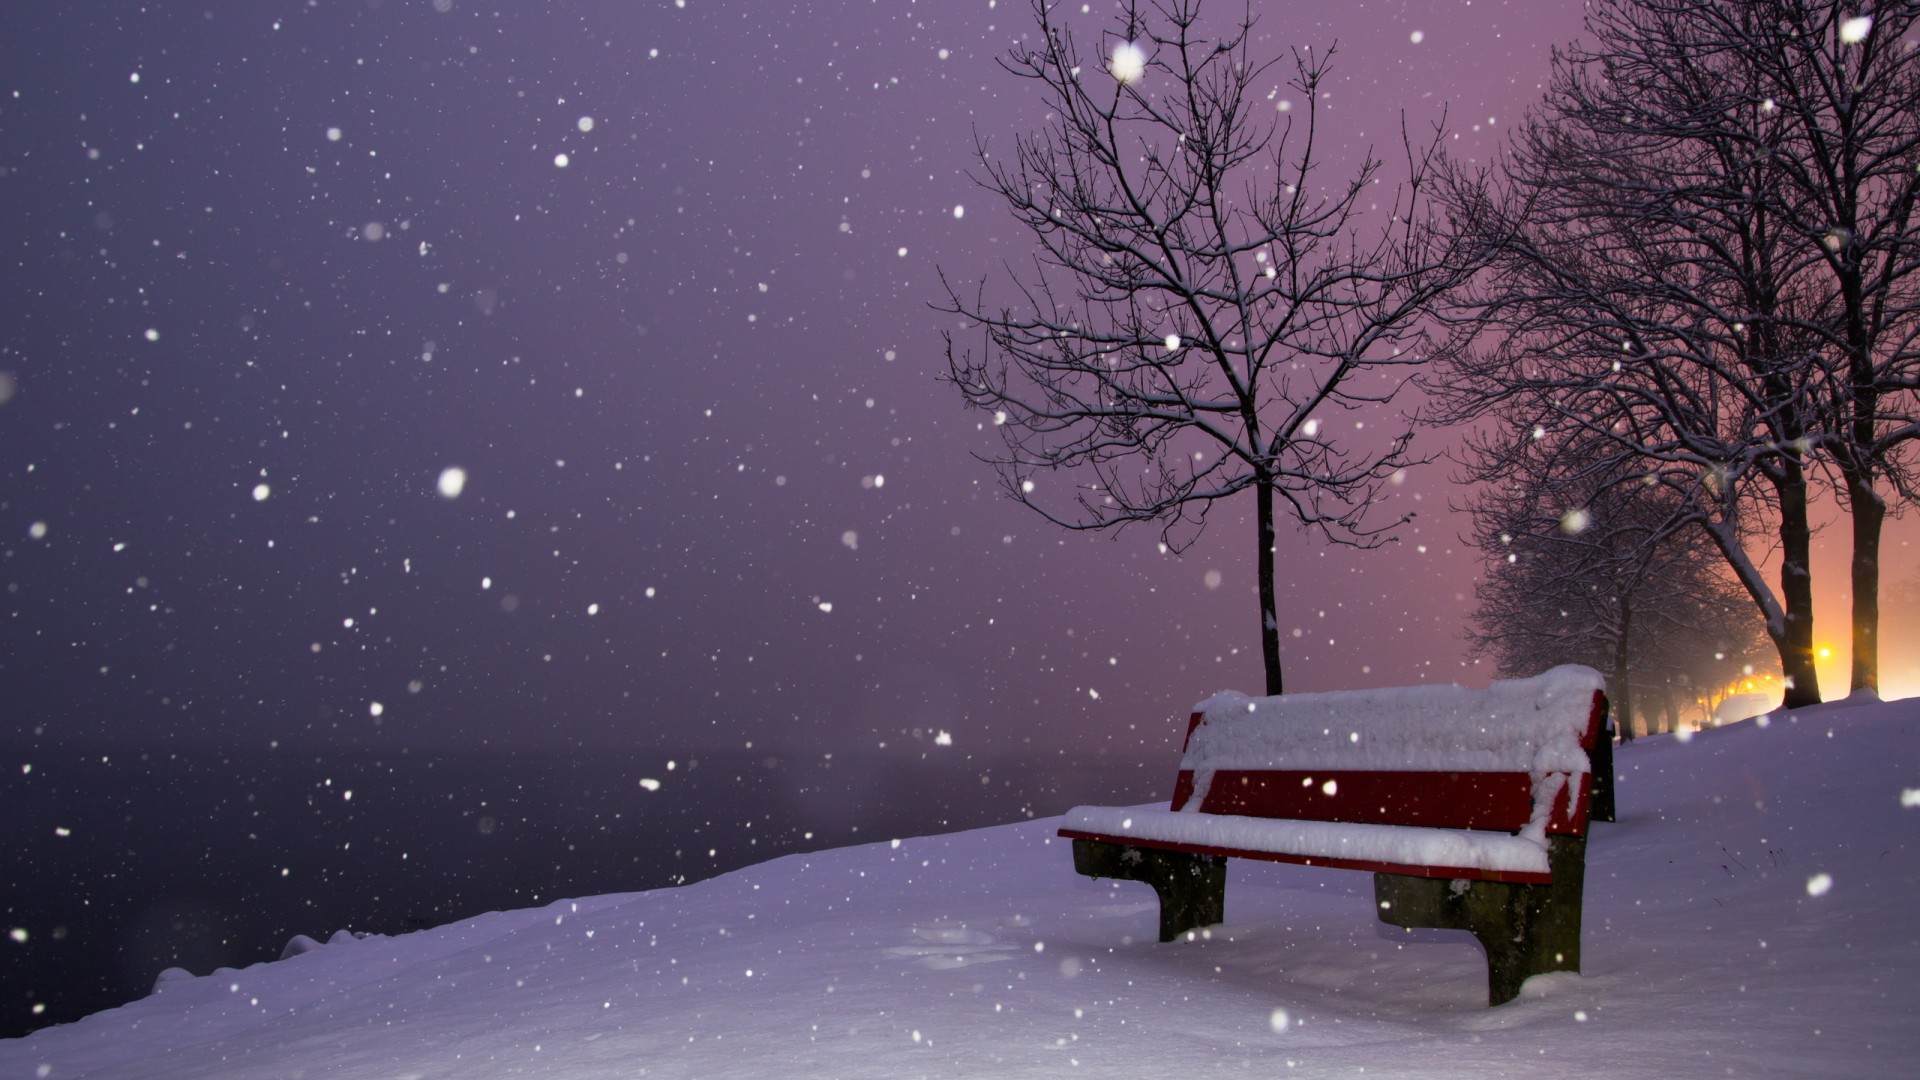 晚上,长凳,雪,雪花,冬天风景电脑壁纸